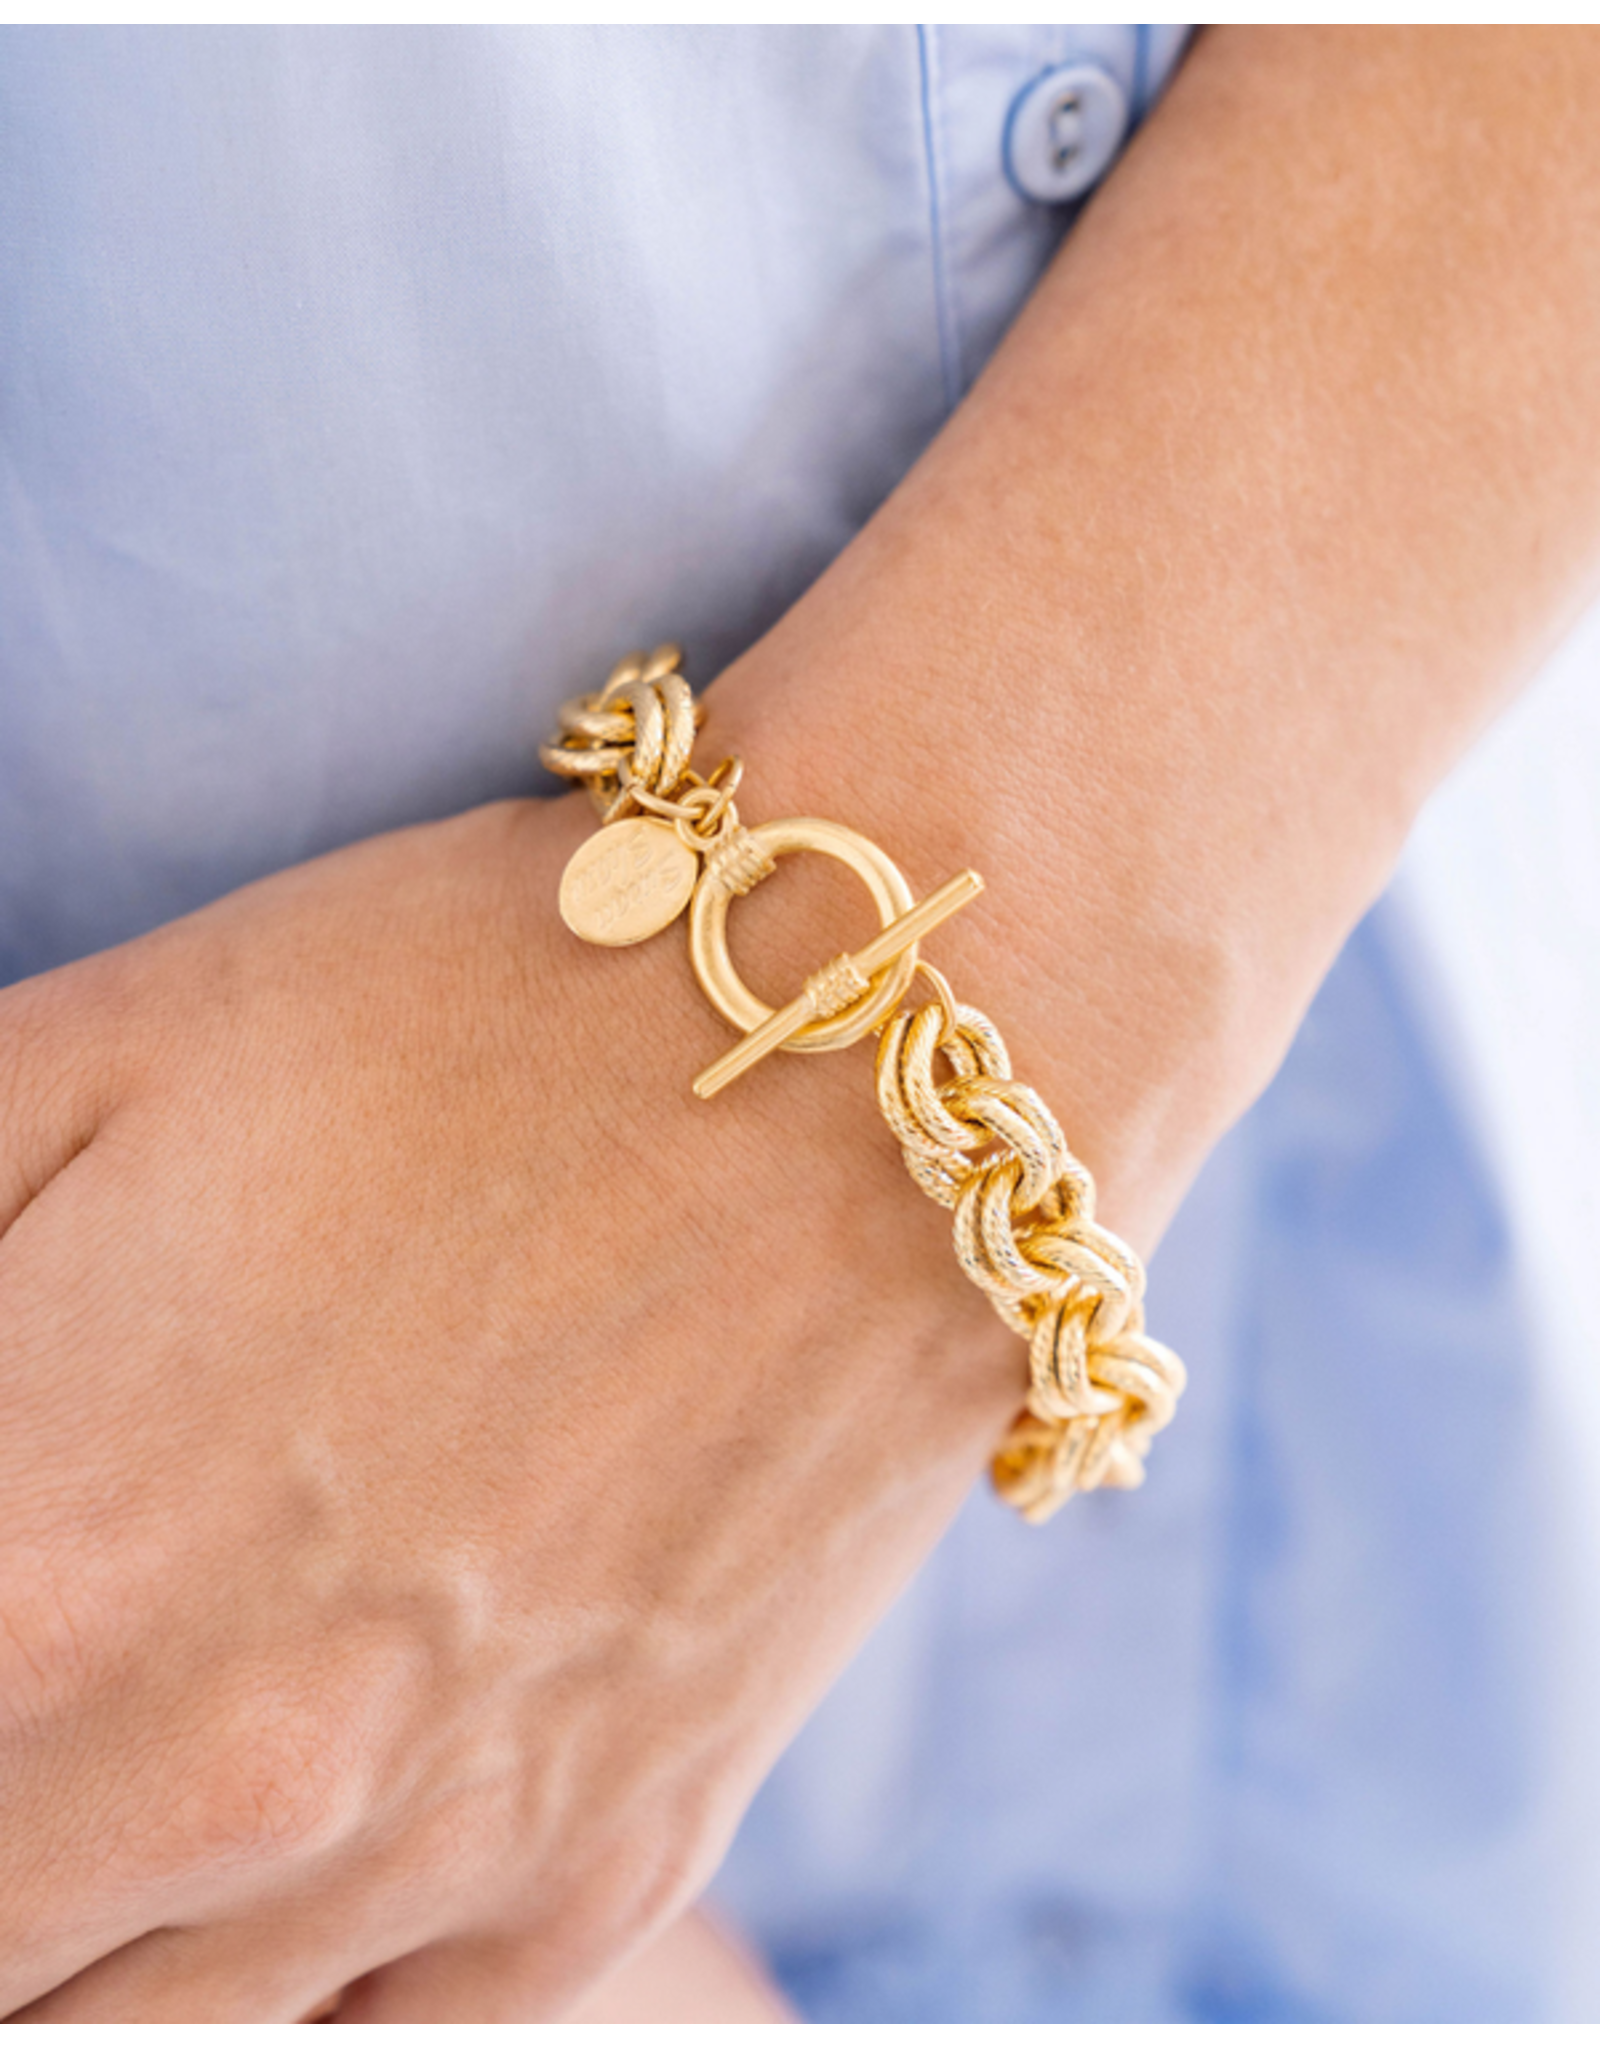 Susan Shaw Double Link Chain Bracelet